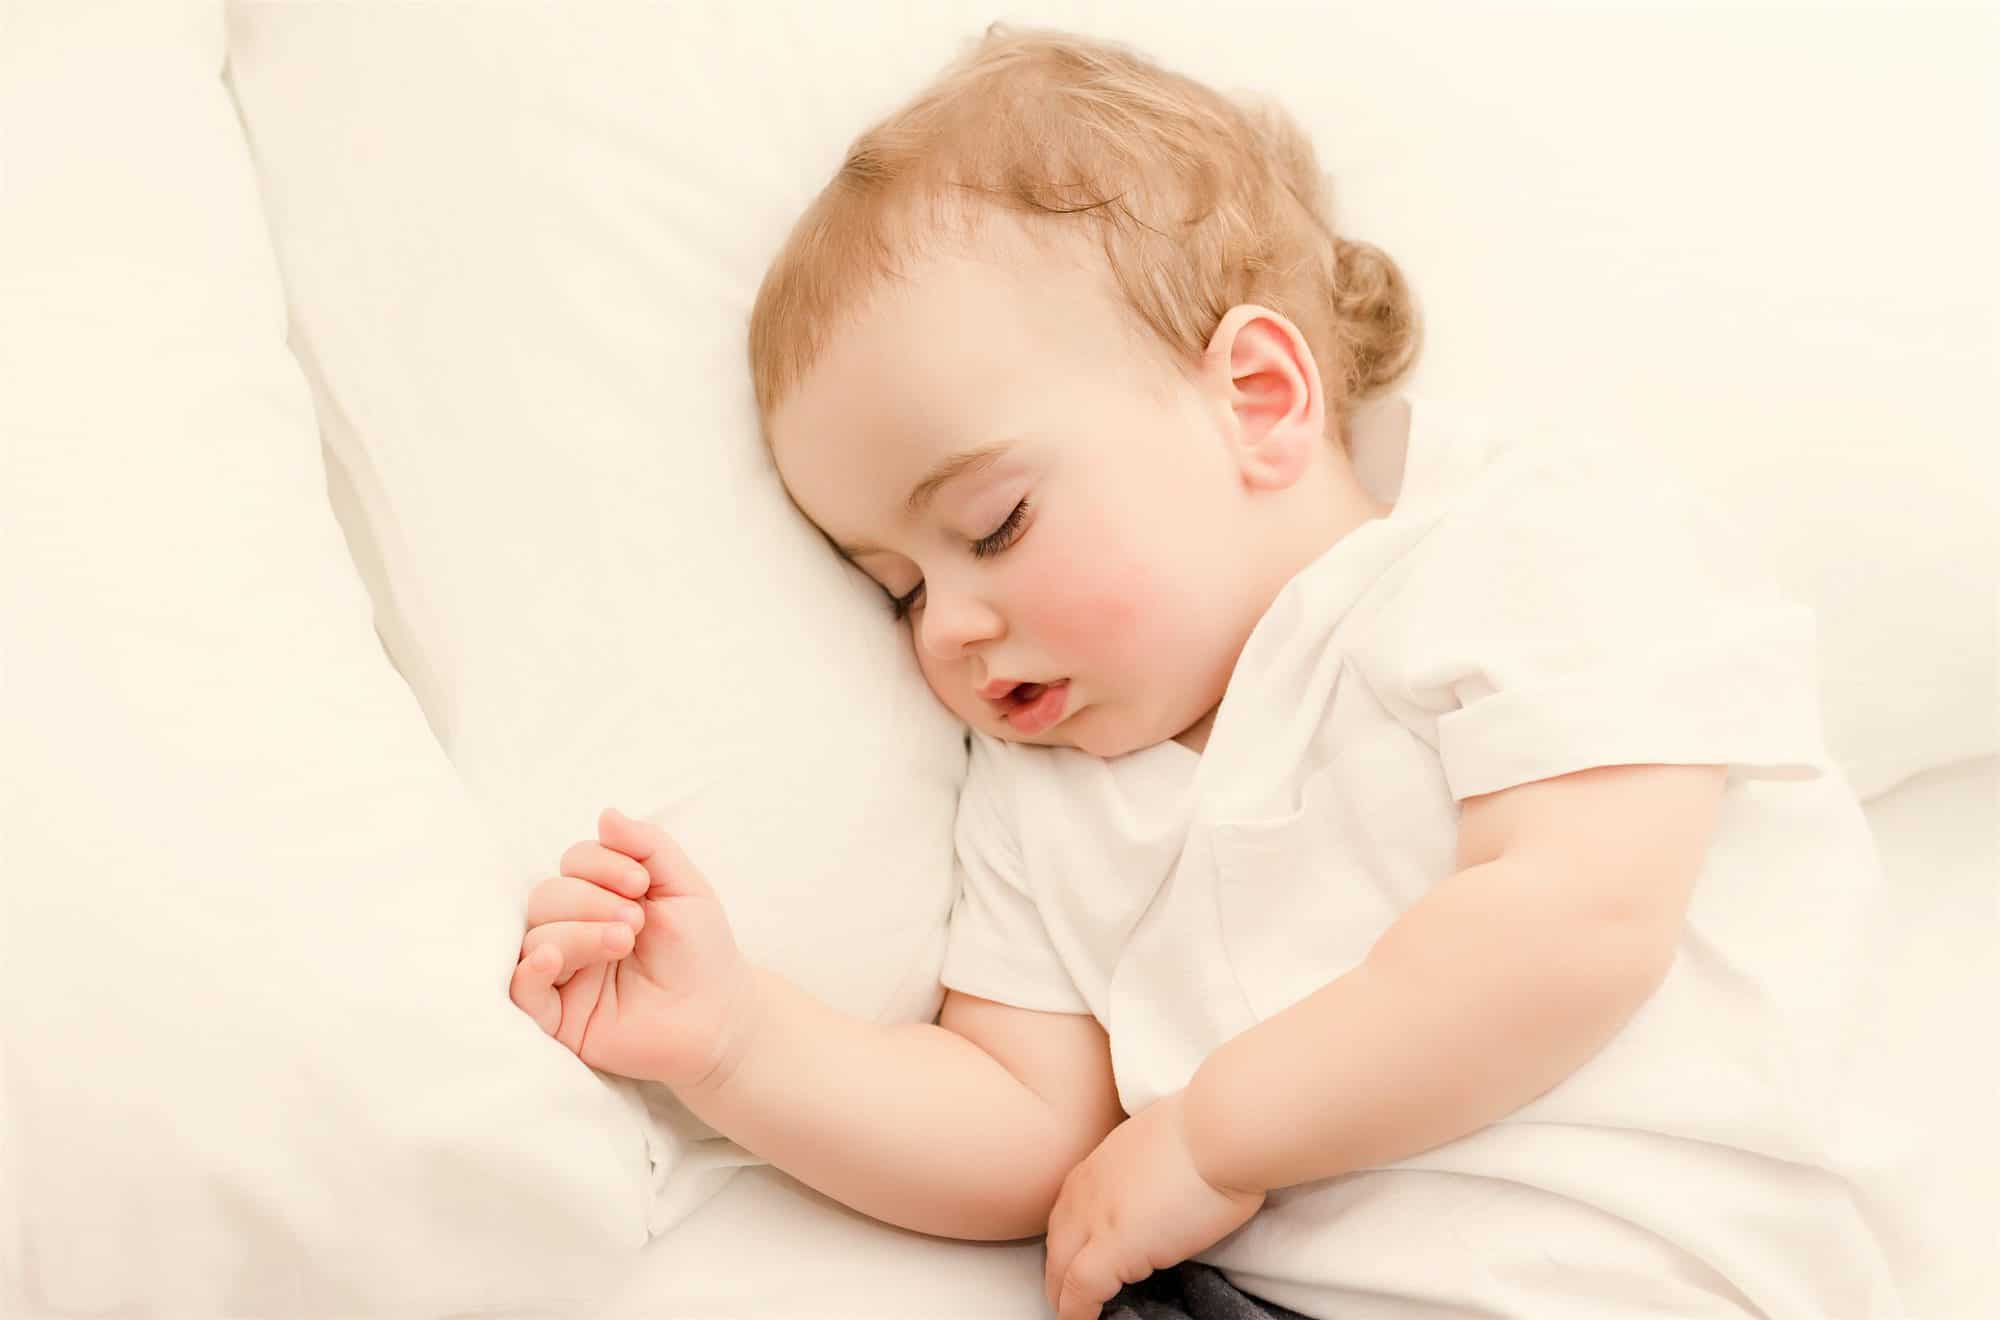 Trucos infalibles para acostumbrar al bebé a dormir solo